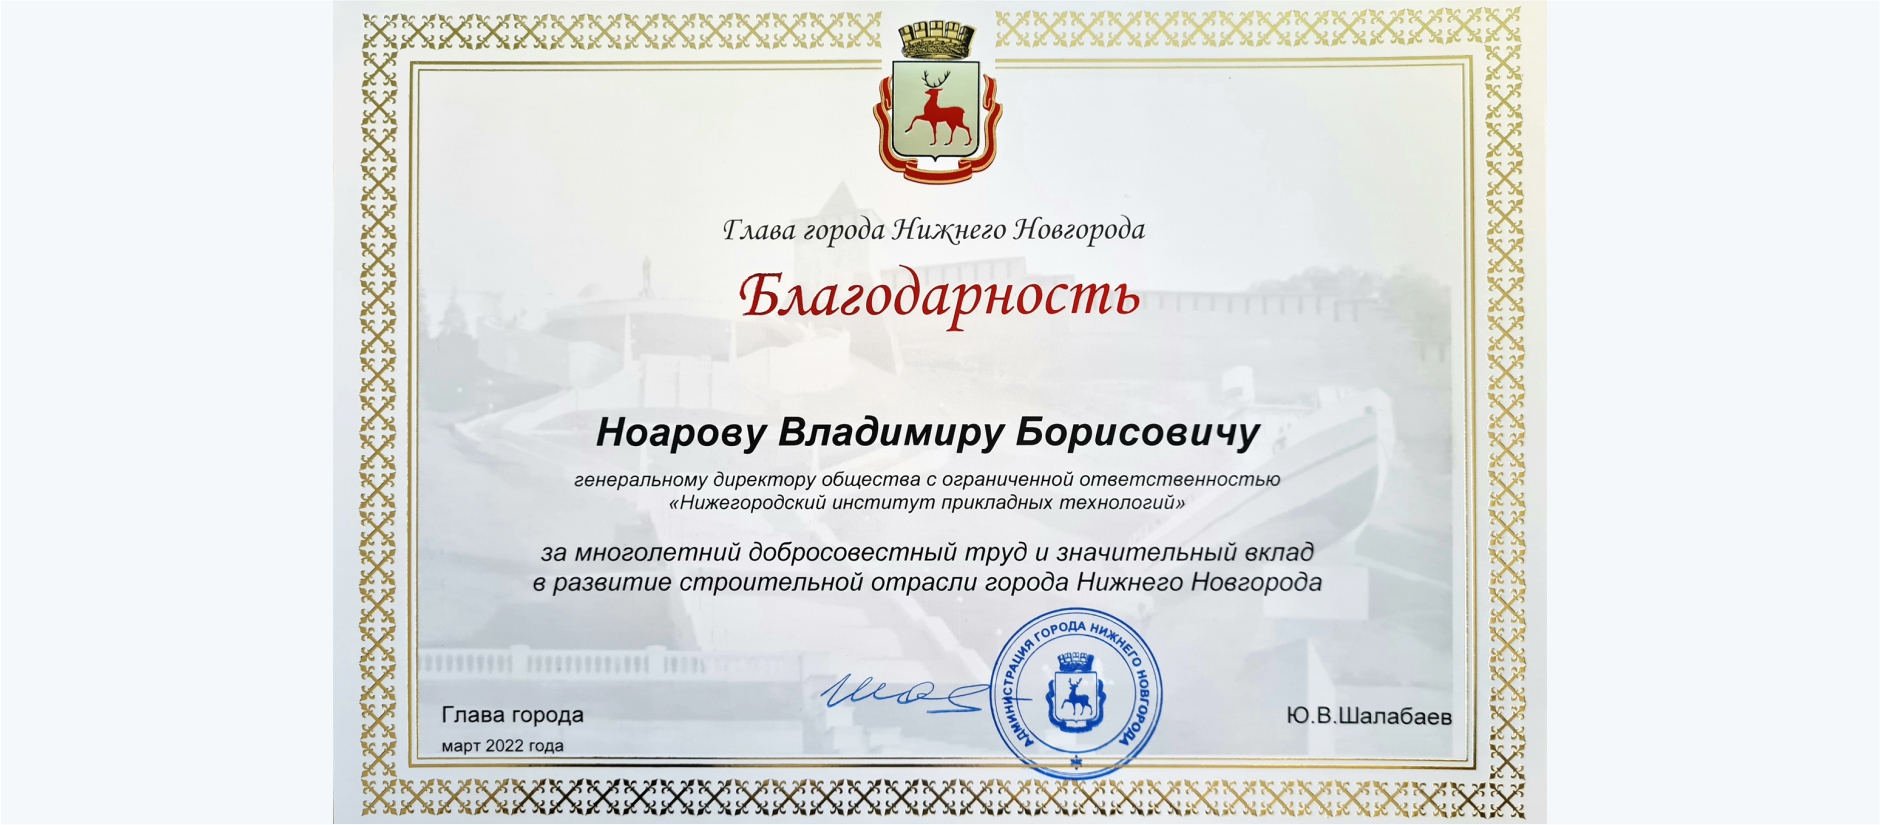 Appreciation from the Mayor of Nizhny Novgorod